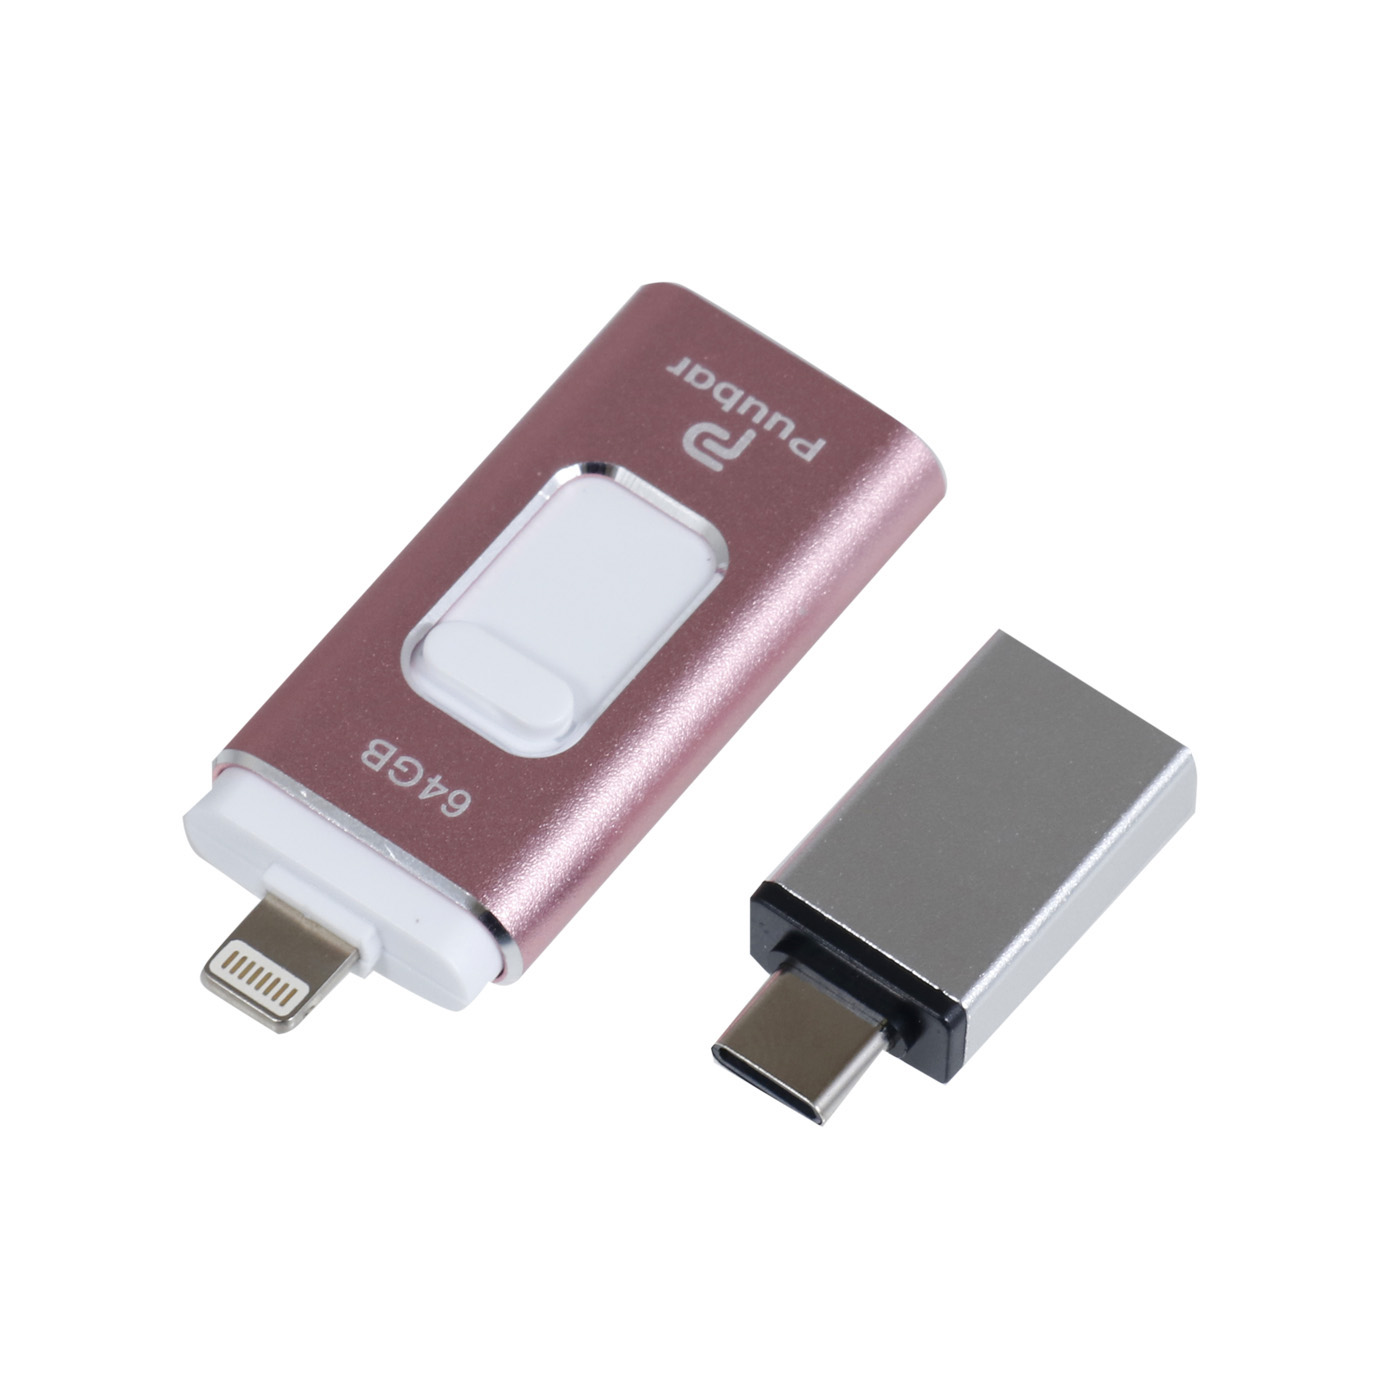 USBメモリー 4in1 USB3.0 フラッシュメモリー アイフォン対応 iPad Mac スマホ用 micro type-c タブレット 送料無料